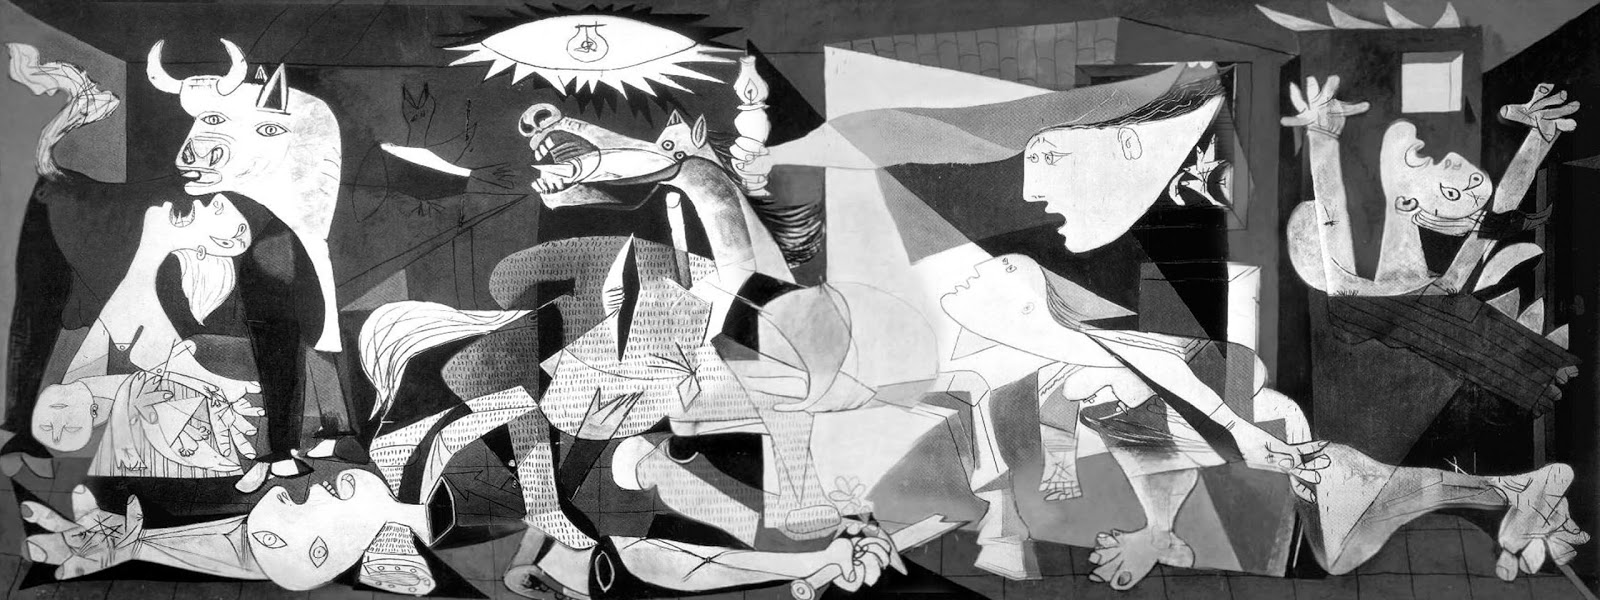 Guernica Pablo Picasso 1937 ~ High resolution Art photos museum quality